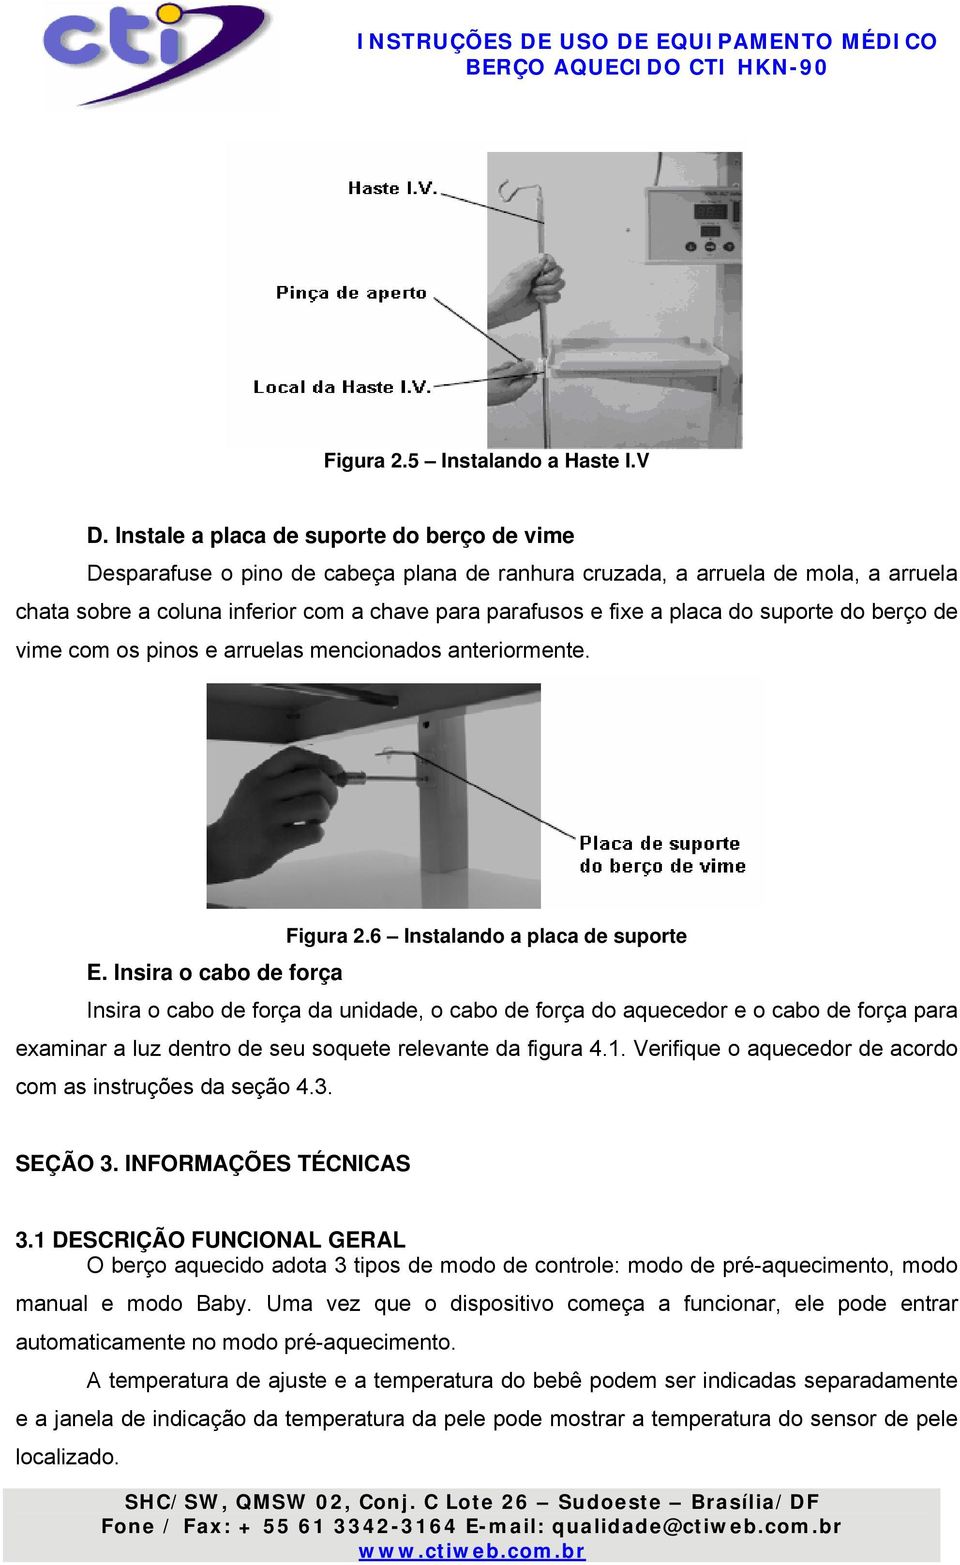 INSTRUÇÕES DE USO BERÇO AQUECIDO CTI HKN-90 - PDF Free Download